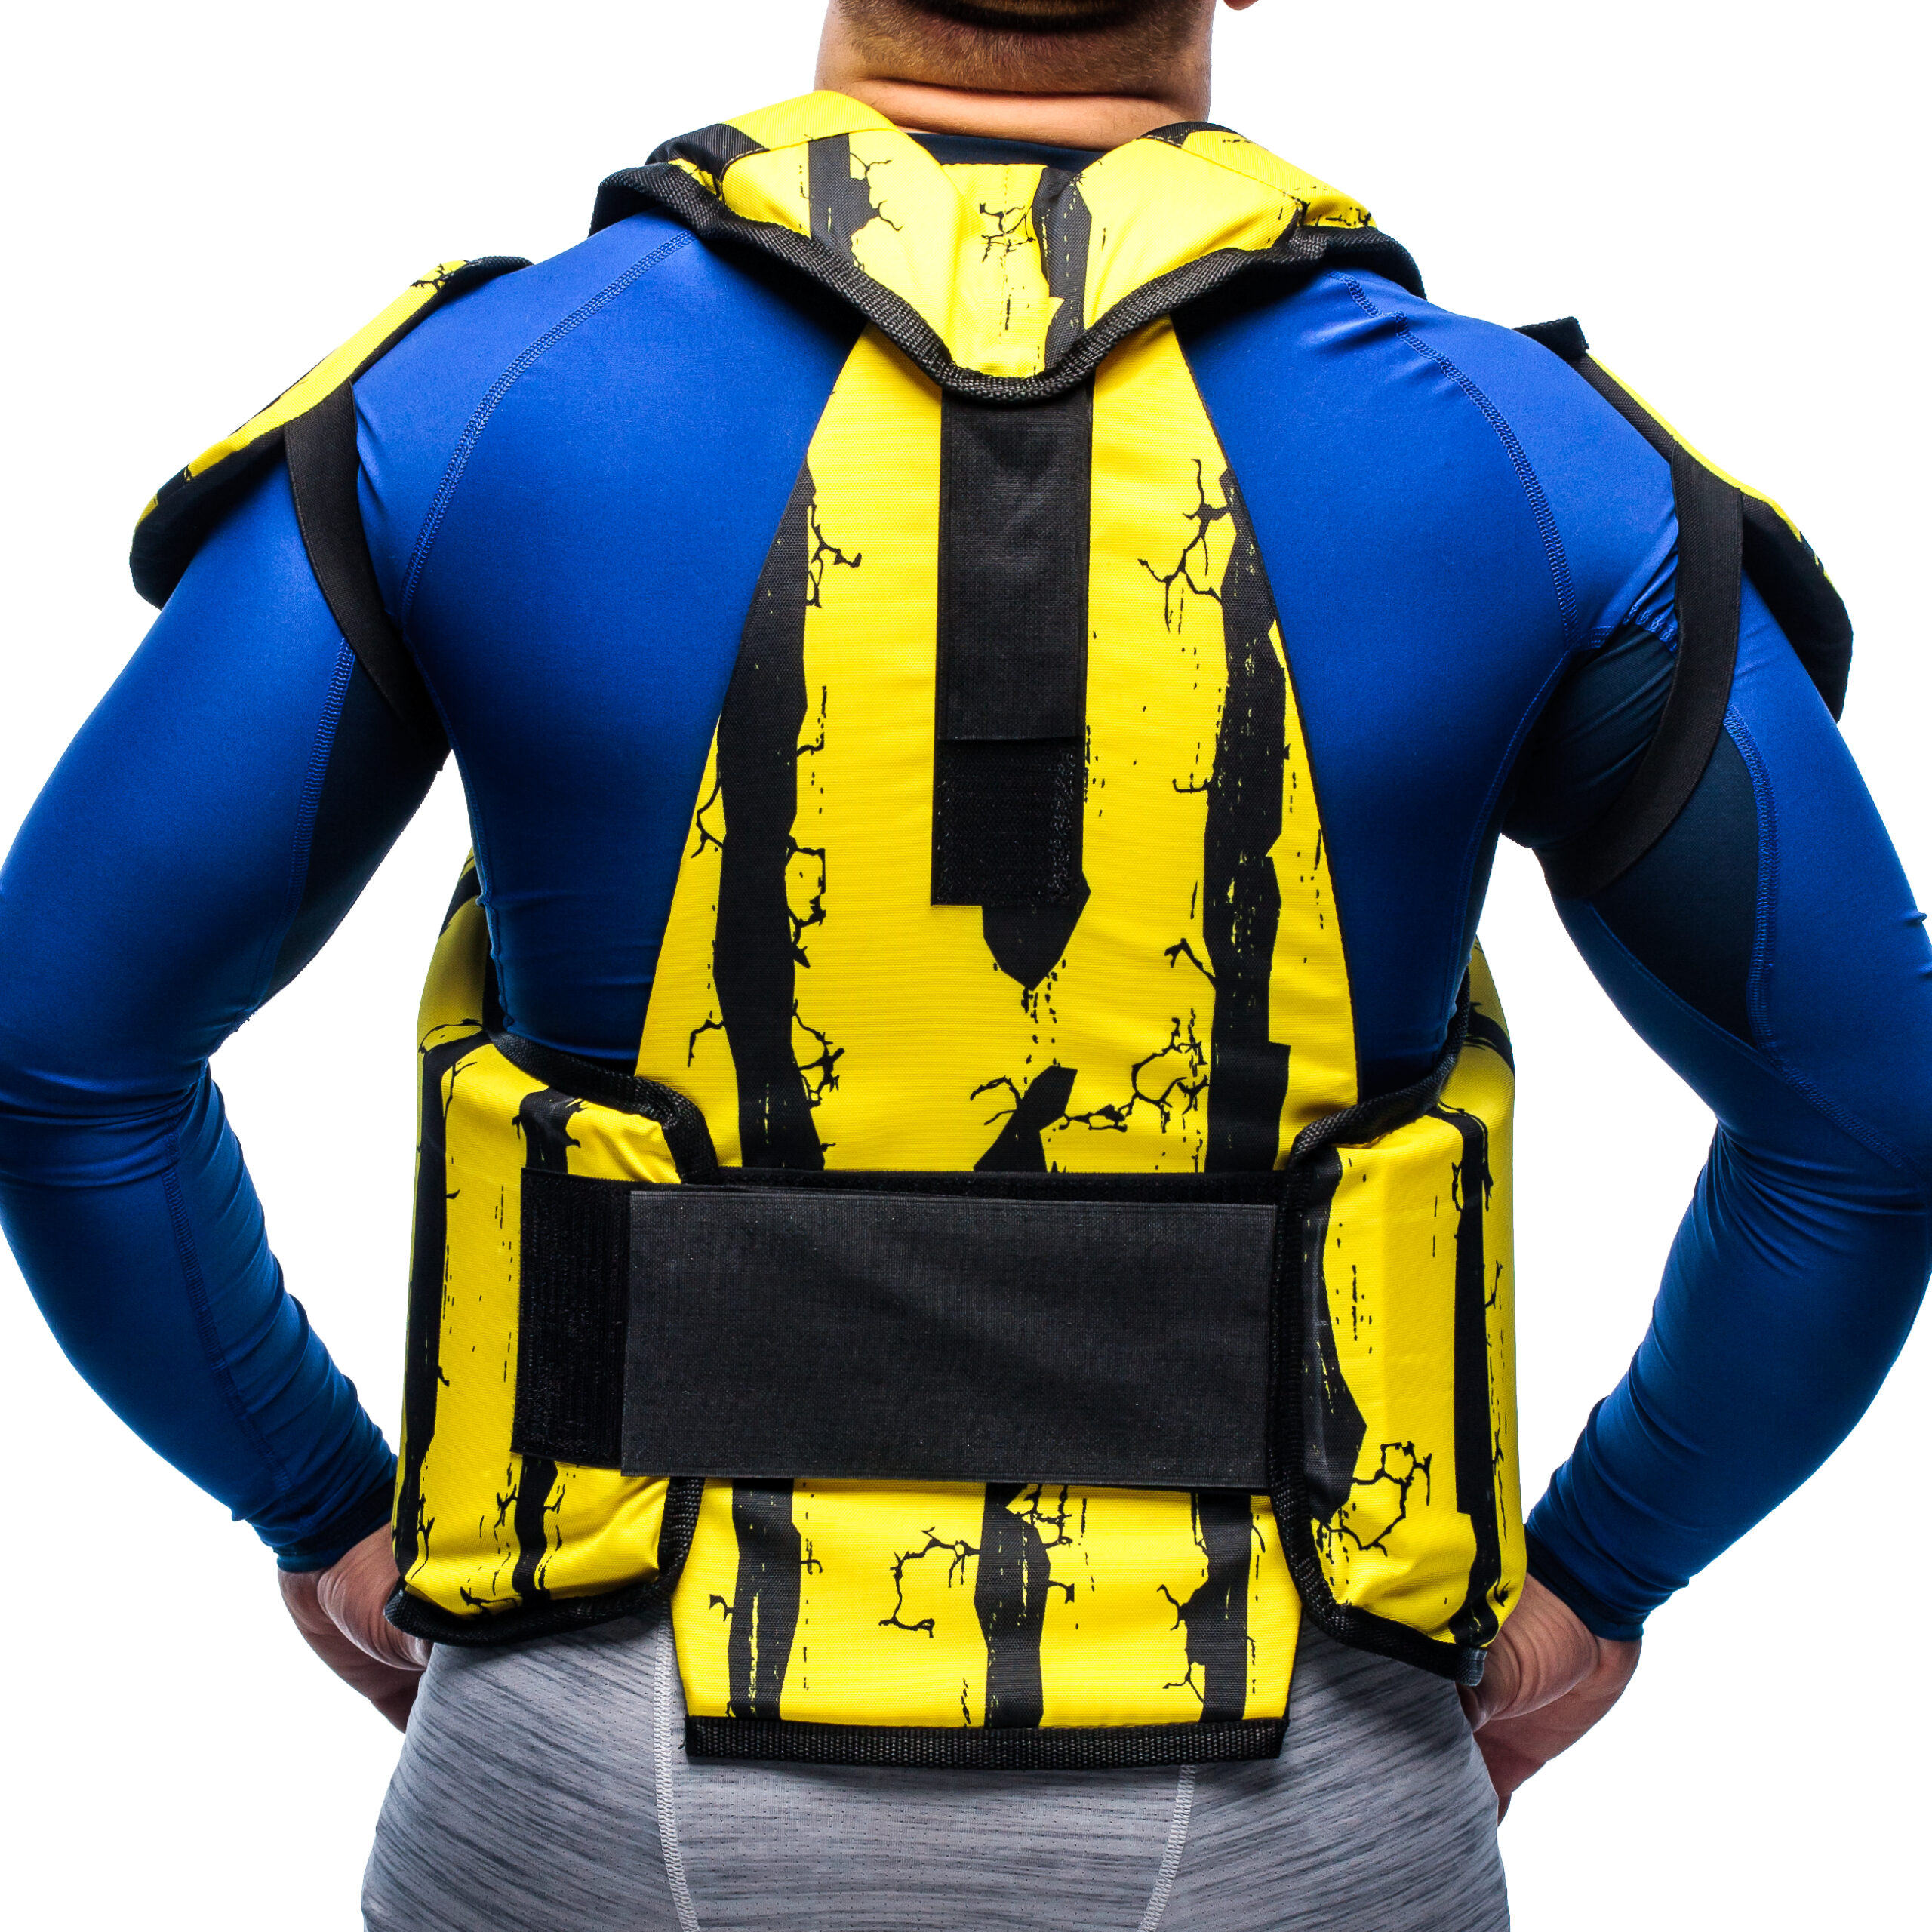 Lightweight vest with shoulder protection Salamander PrintE